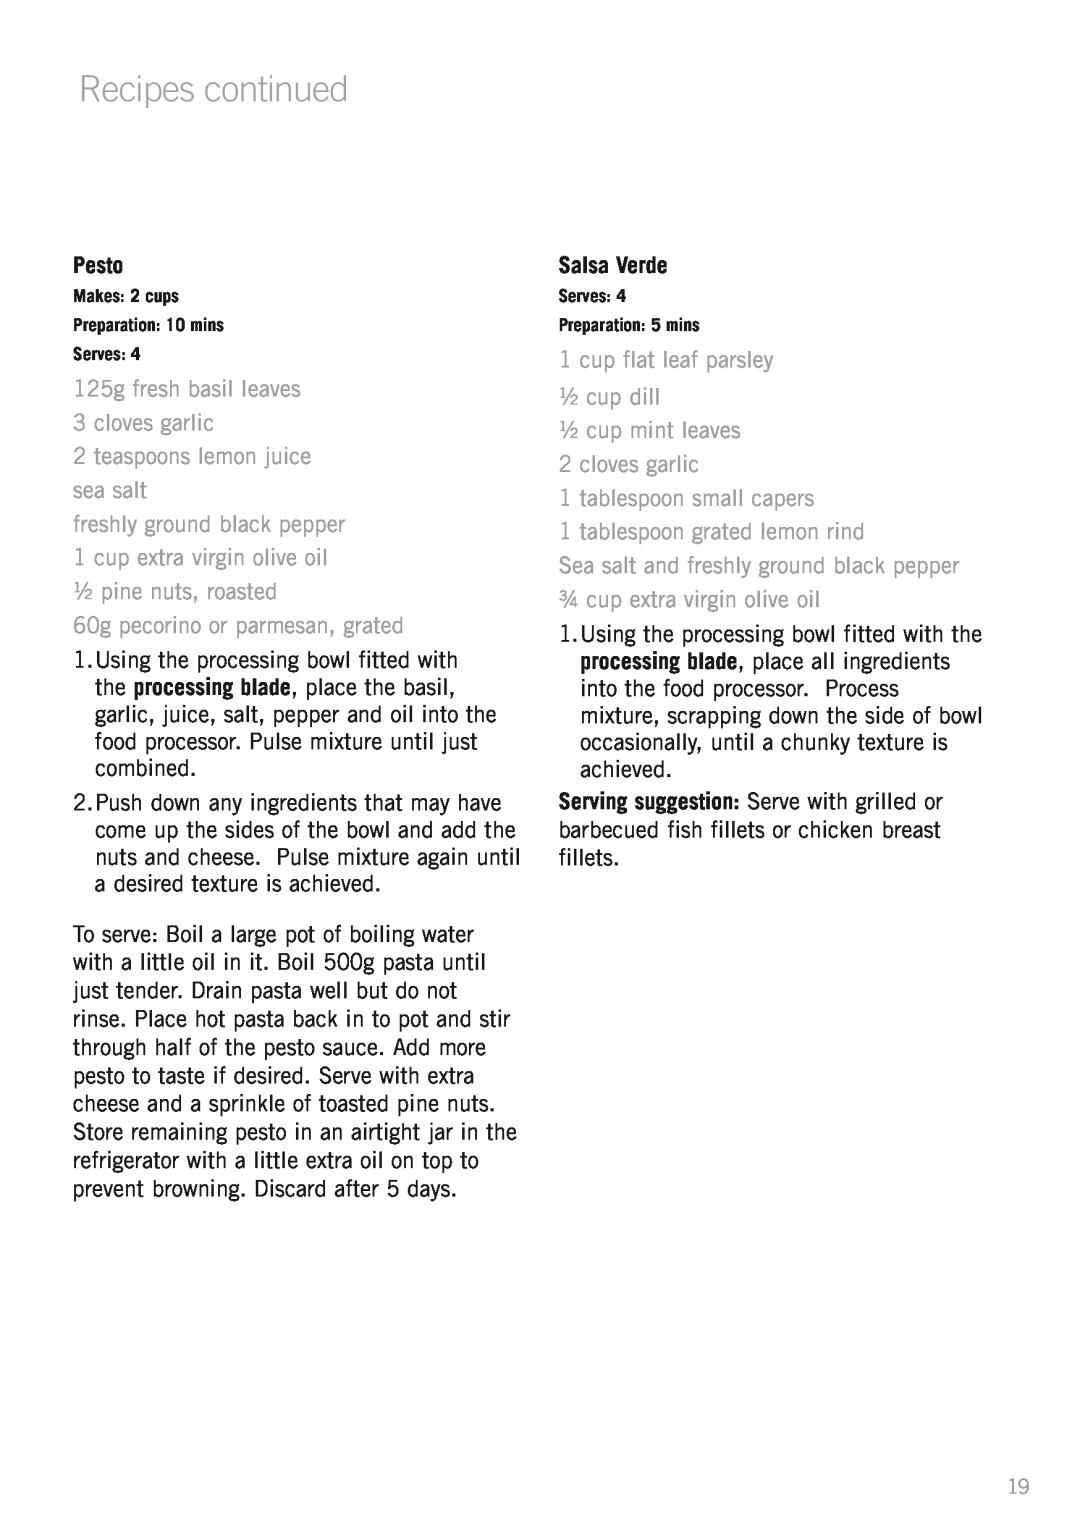 Sunbeam LC3200 manual Recipes continued, Pesto, 125g fresh basil leaves 3 cloves garlic, teaspoons lemon juice sea salt 